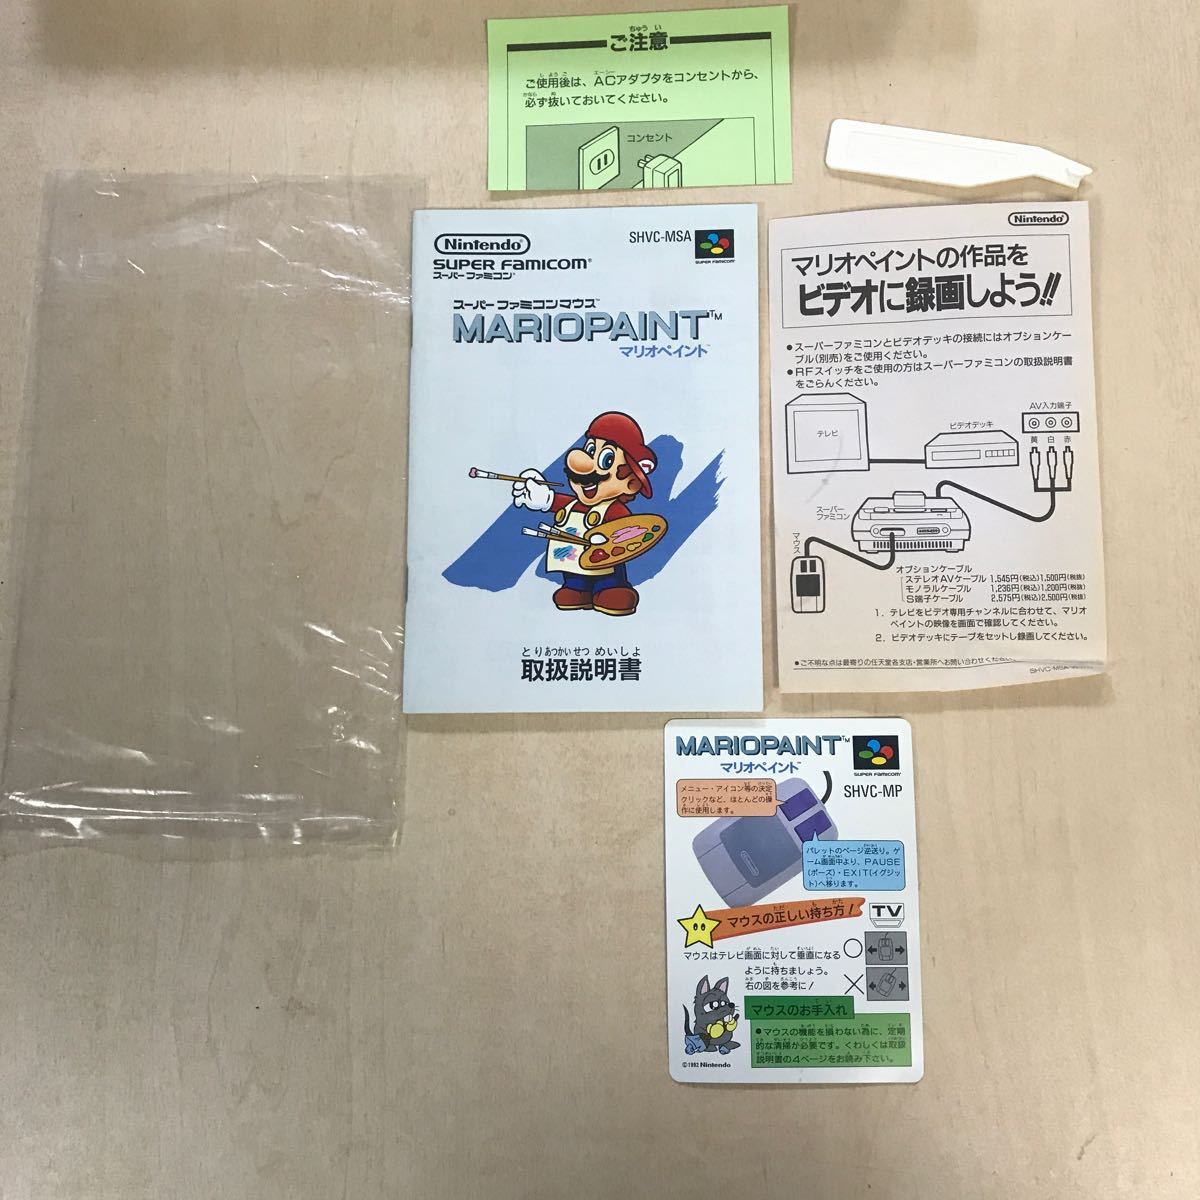 【W541】SFC マリオペイント スーパーファミコンマウス/ソフト箱説明書マウスクリーナー付 SUPER famicom SHVC-MSA 任天堂 Nintendo _画像7